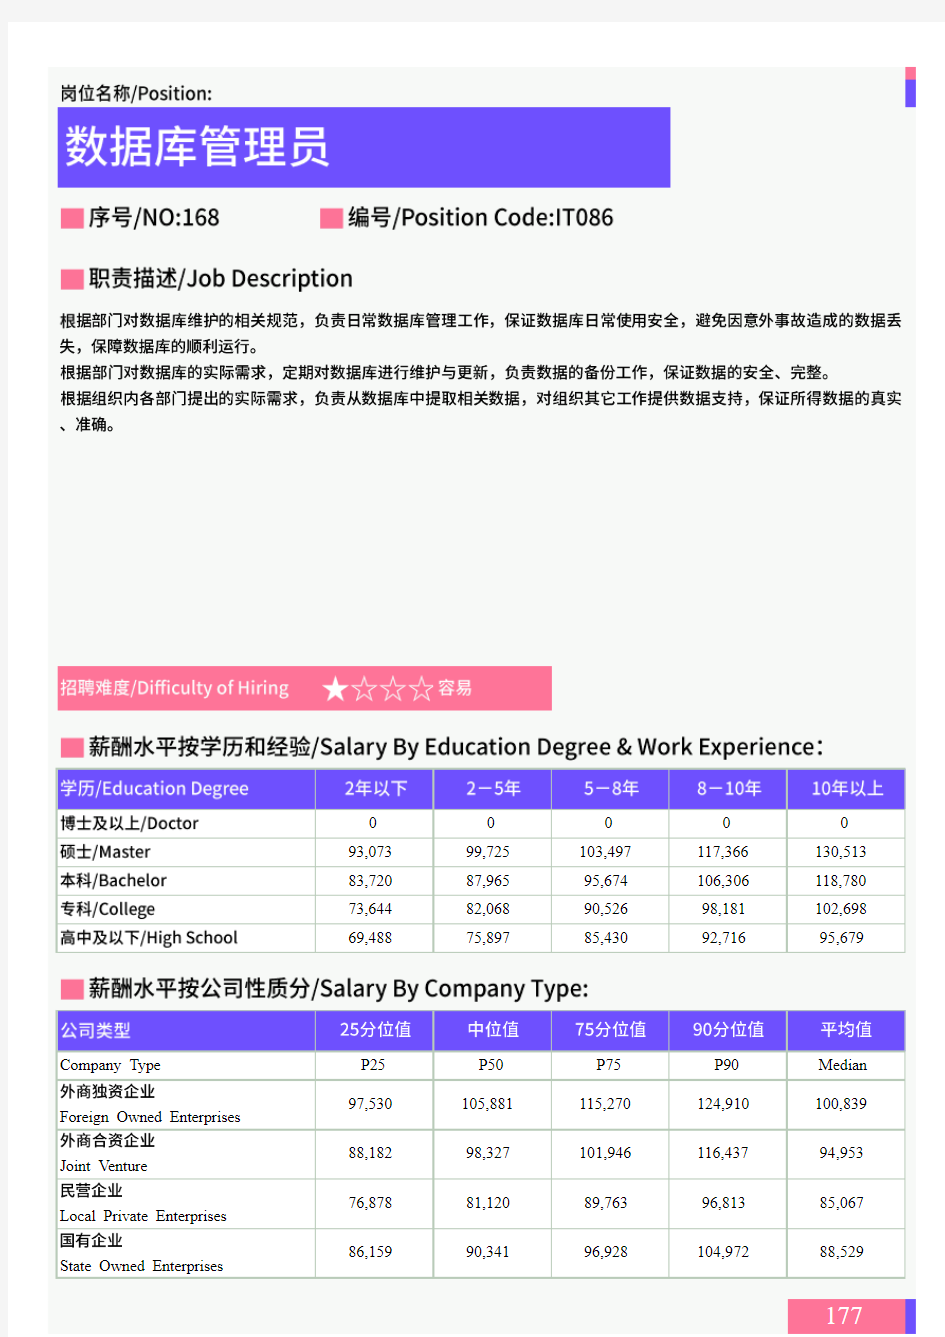 2021年广东省地区数据库管理员岗位薪酬水平报告-最新数据